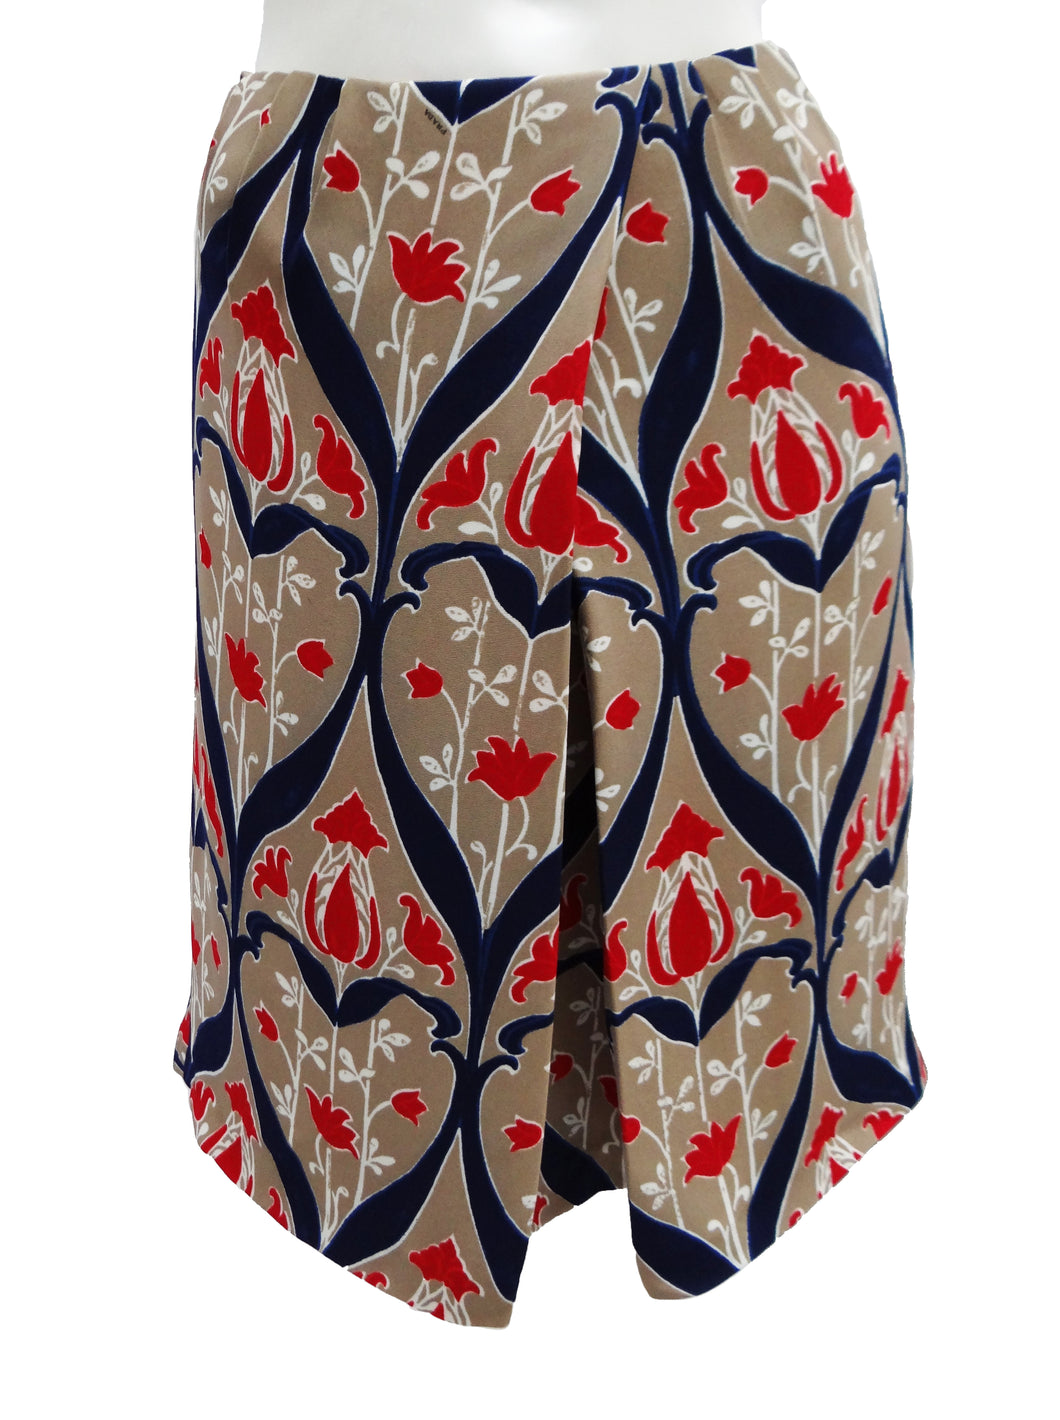 Prada Printed Skirt with Floral Motif, UK8